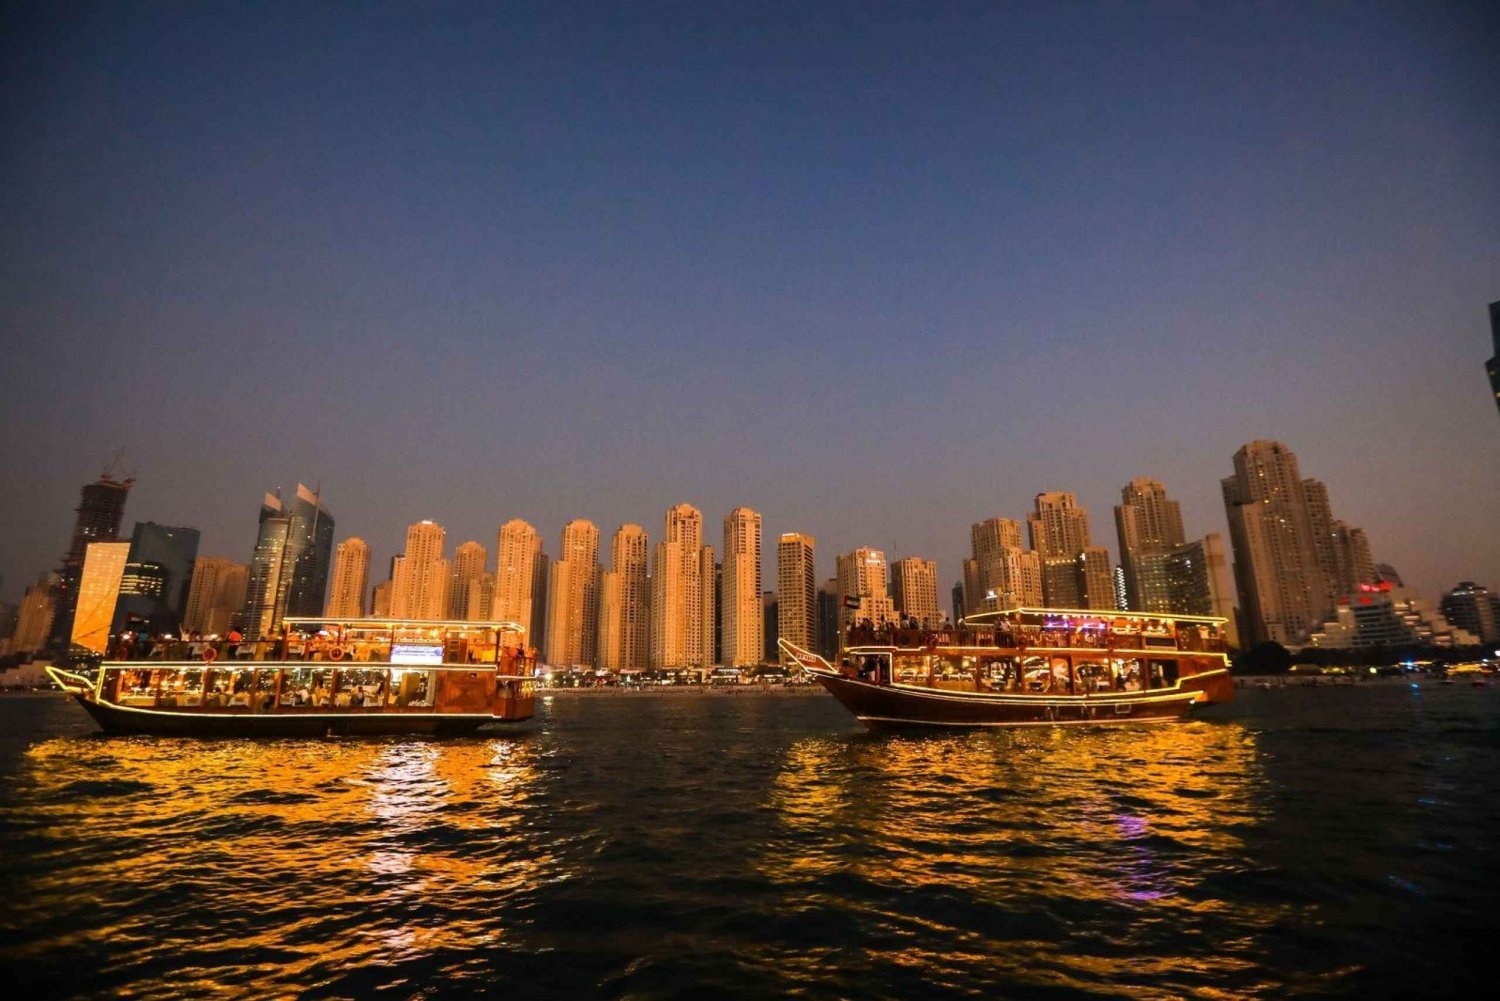 Cena en el lujoso crucero en dhow de Dubai (buffet internacional)